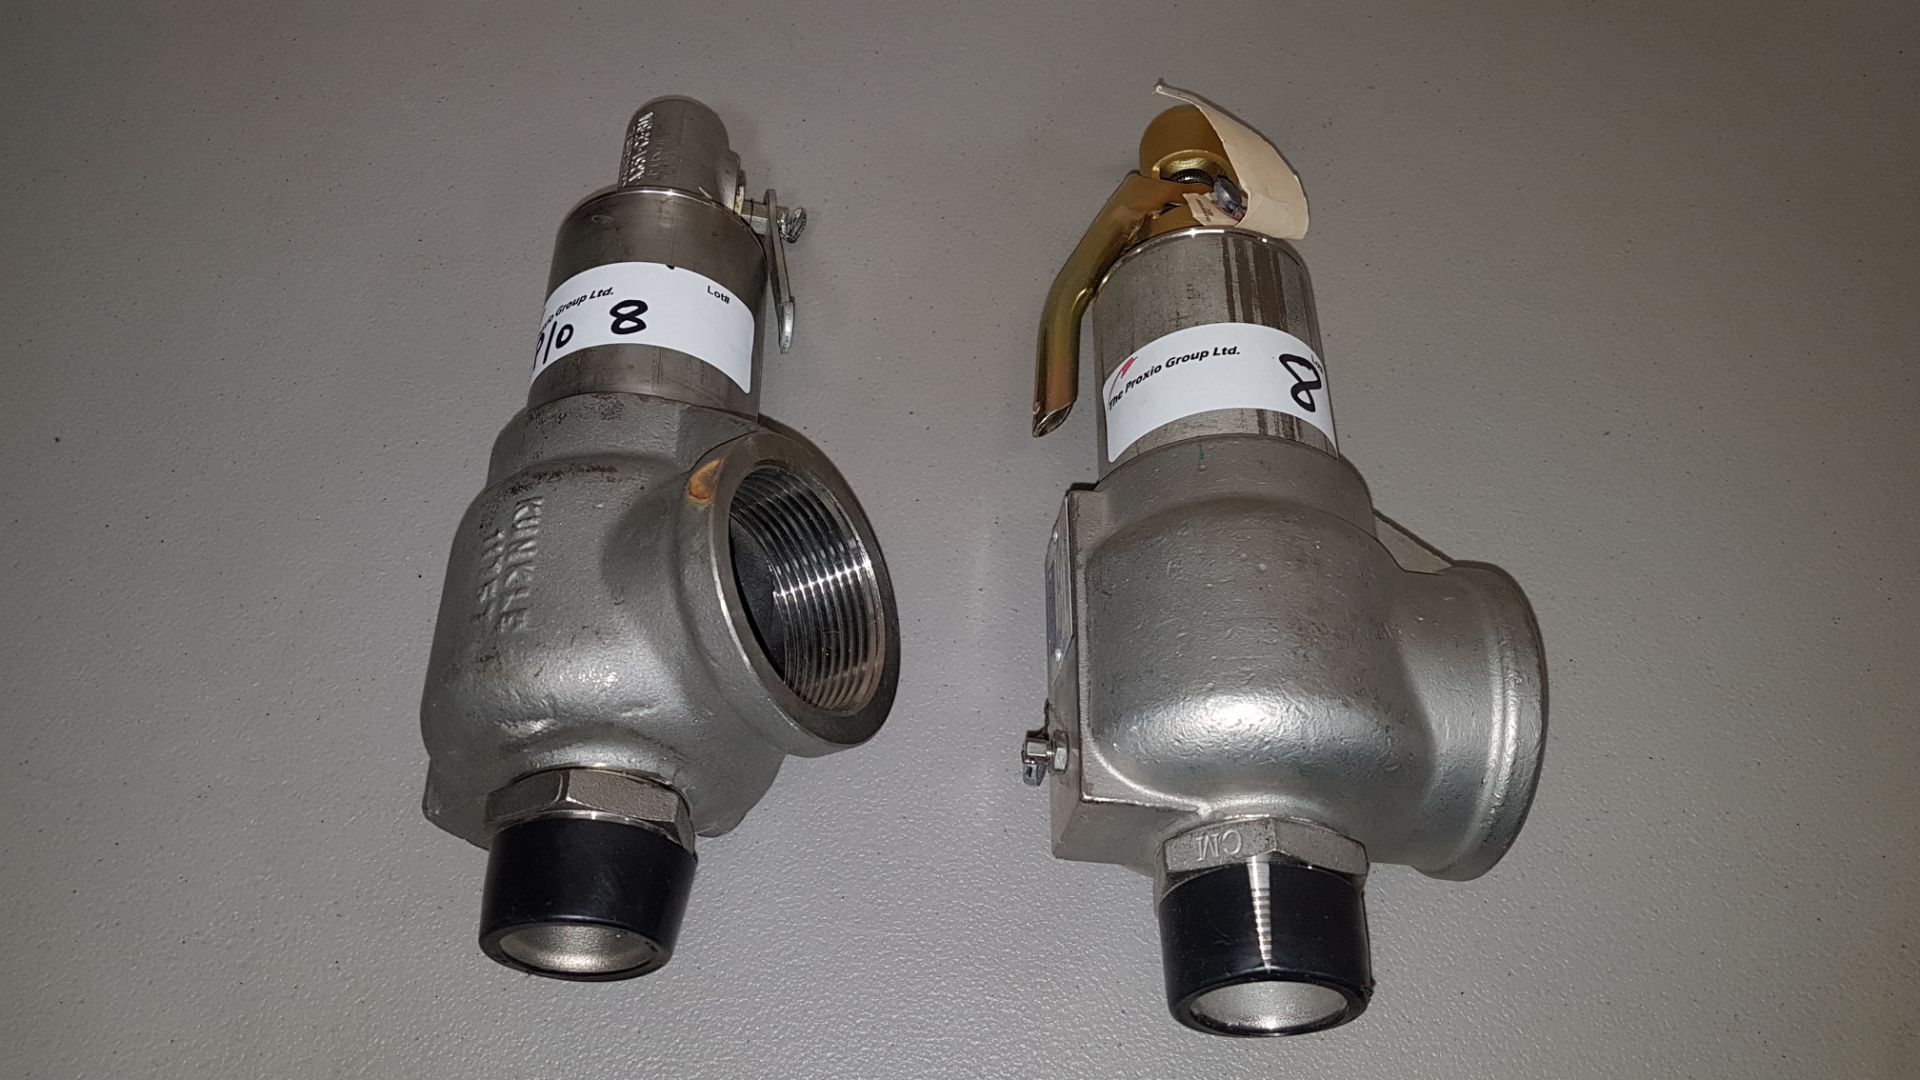 Lot of (2) Kunkle Valve pressure release valves, set for 30 psig.